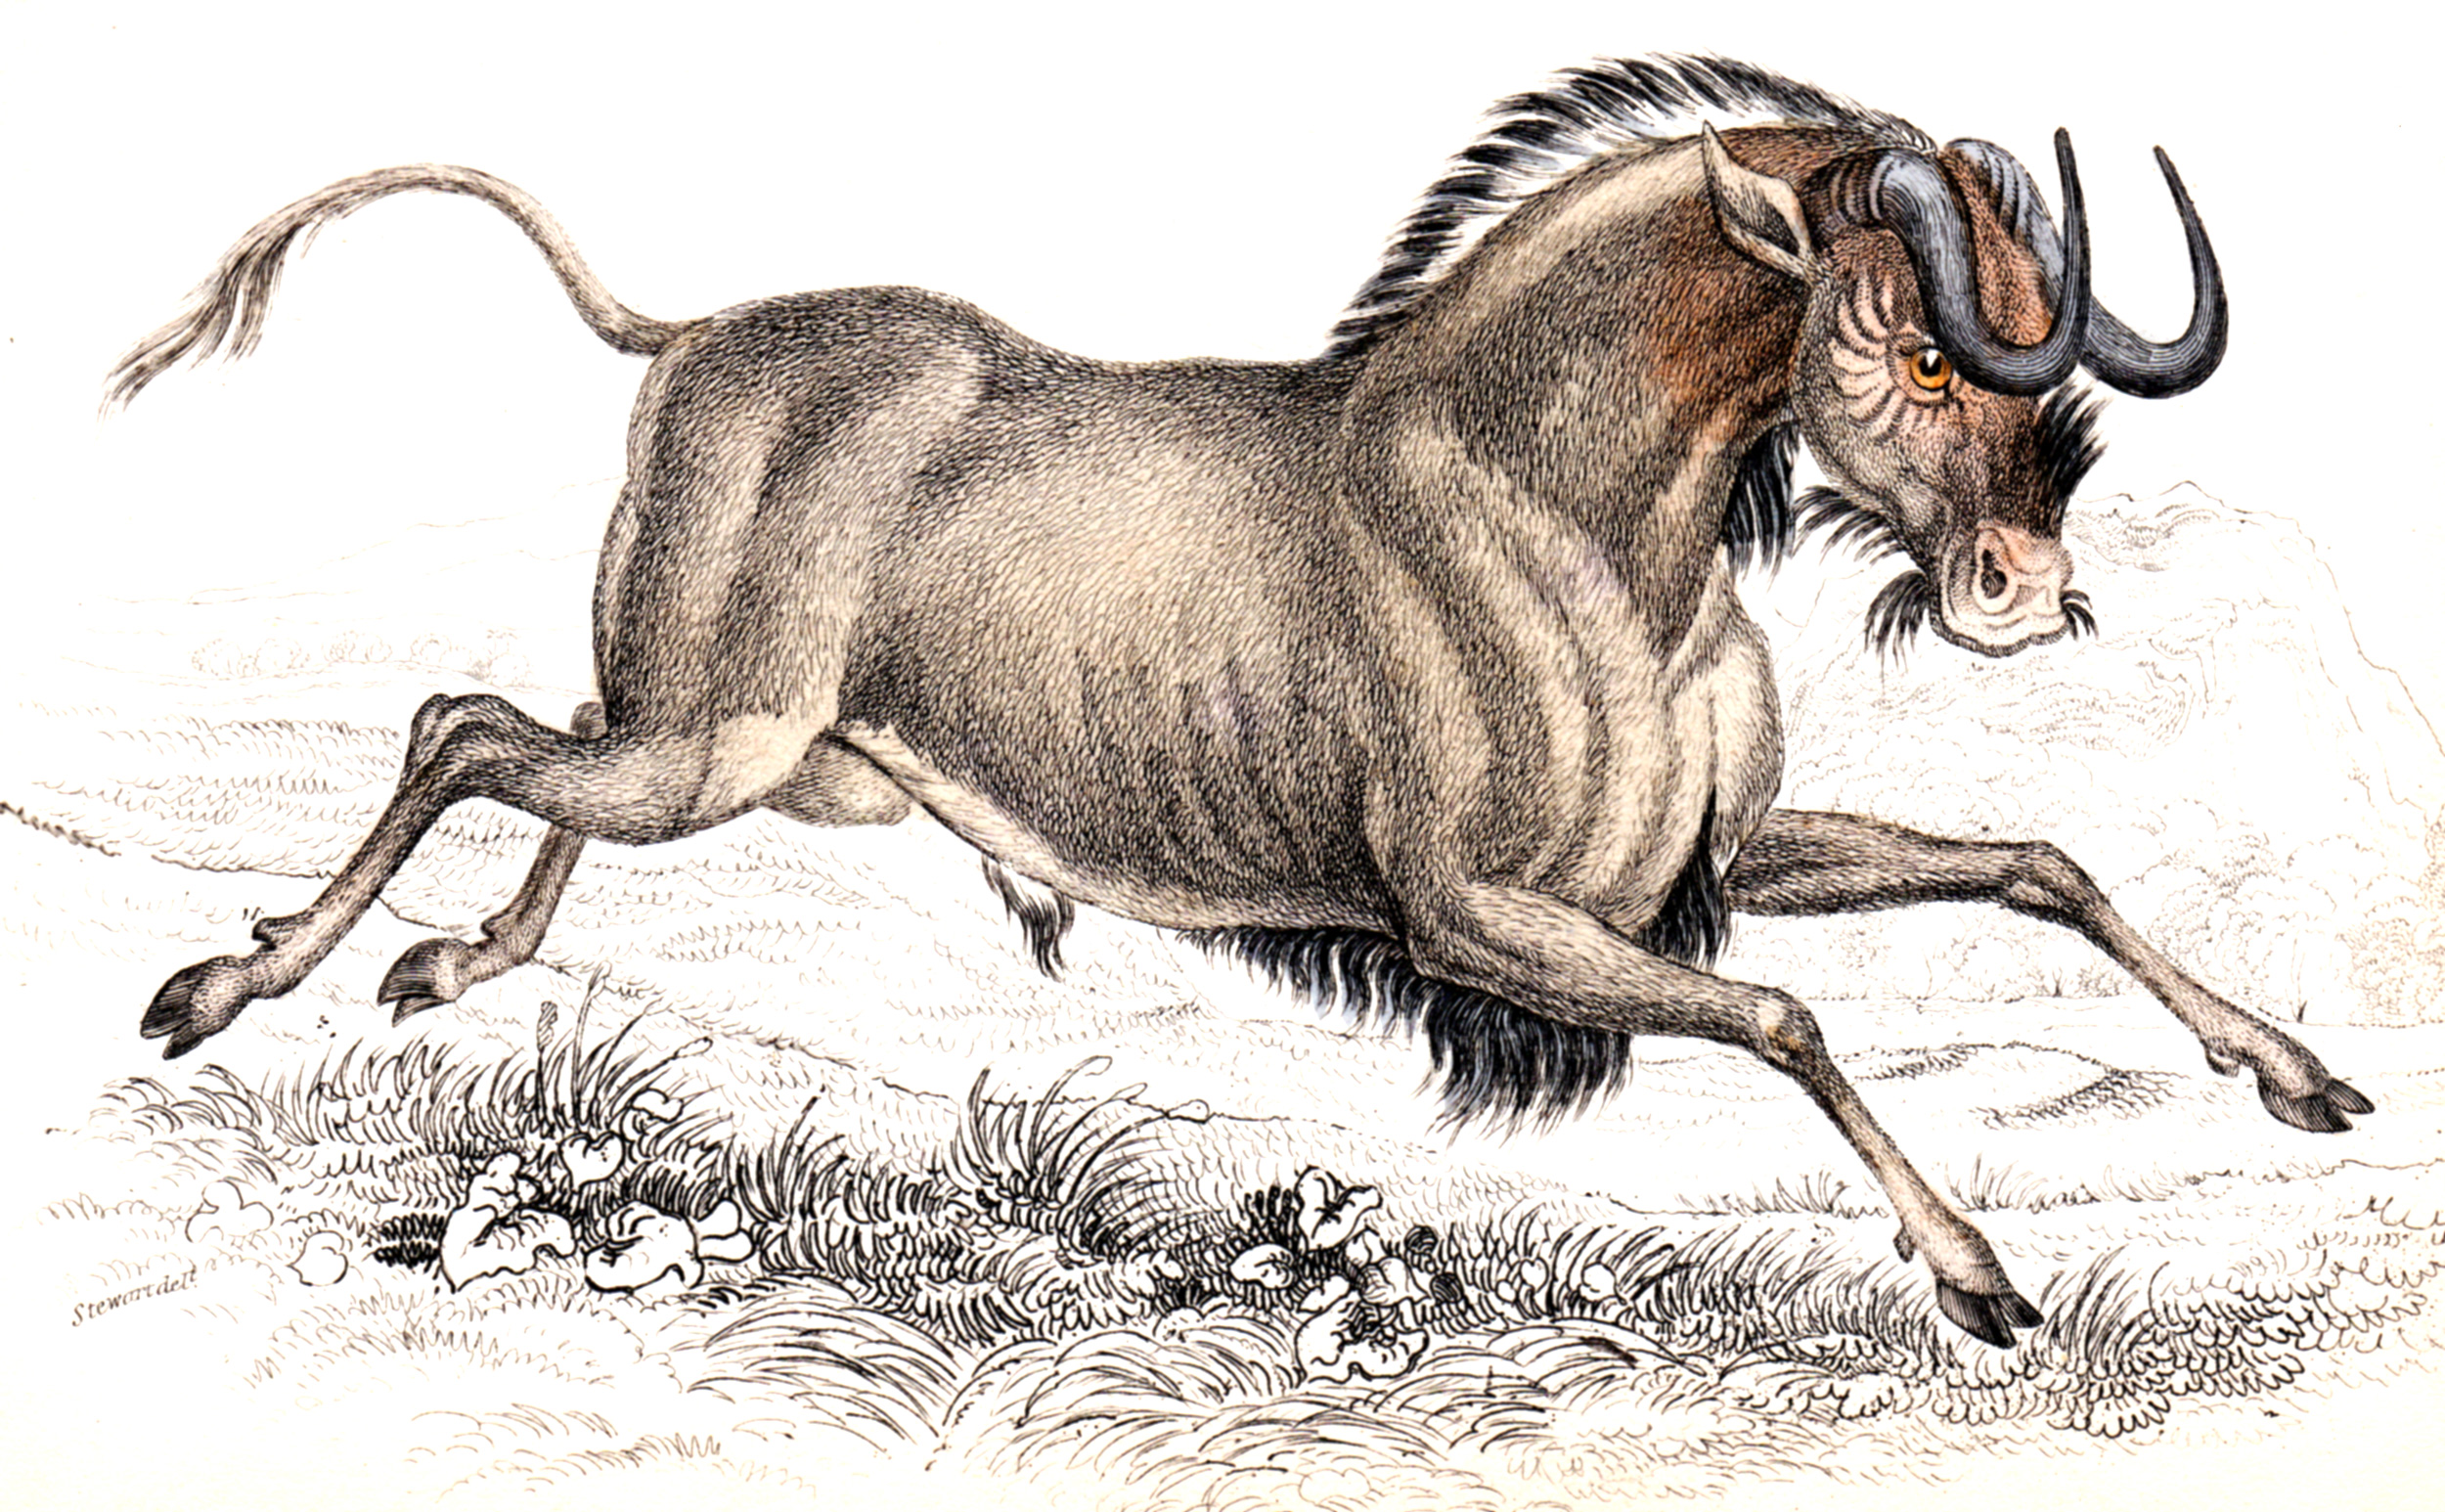 Jardine, Sir Wm / Lizars, Wm – Deer, Antelope, Bison, etc.